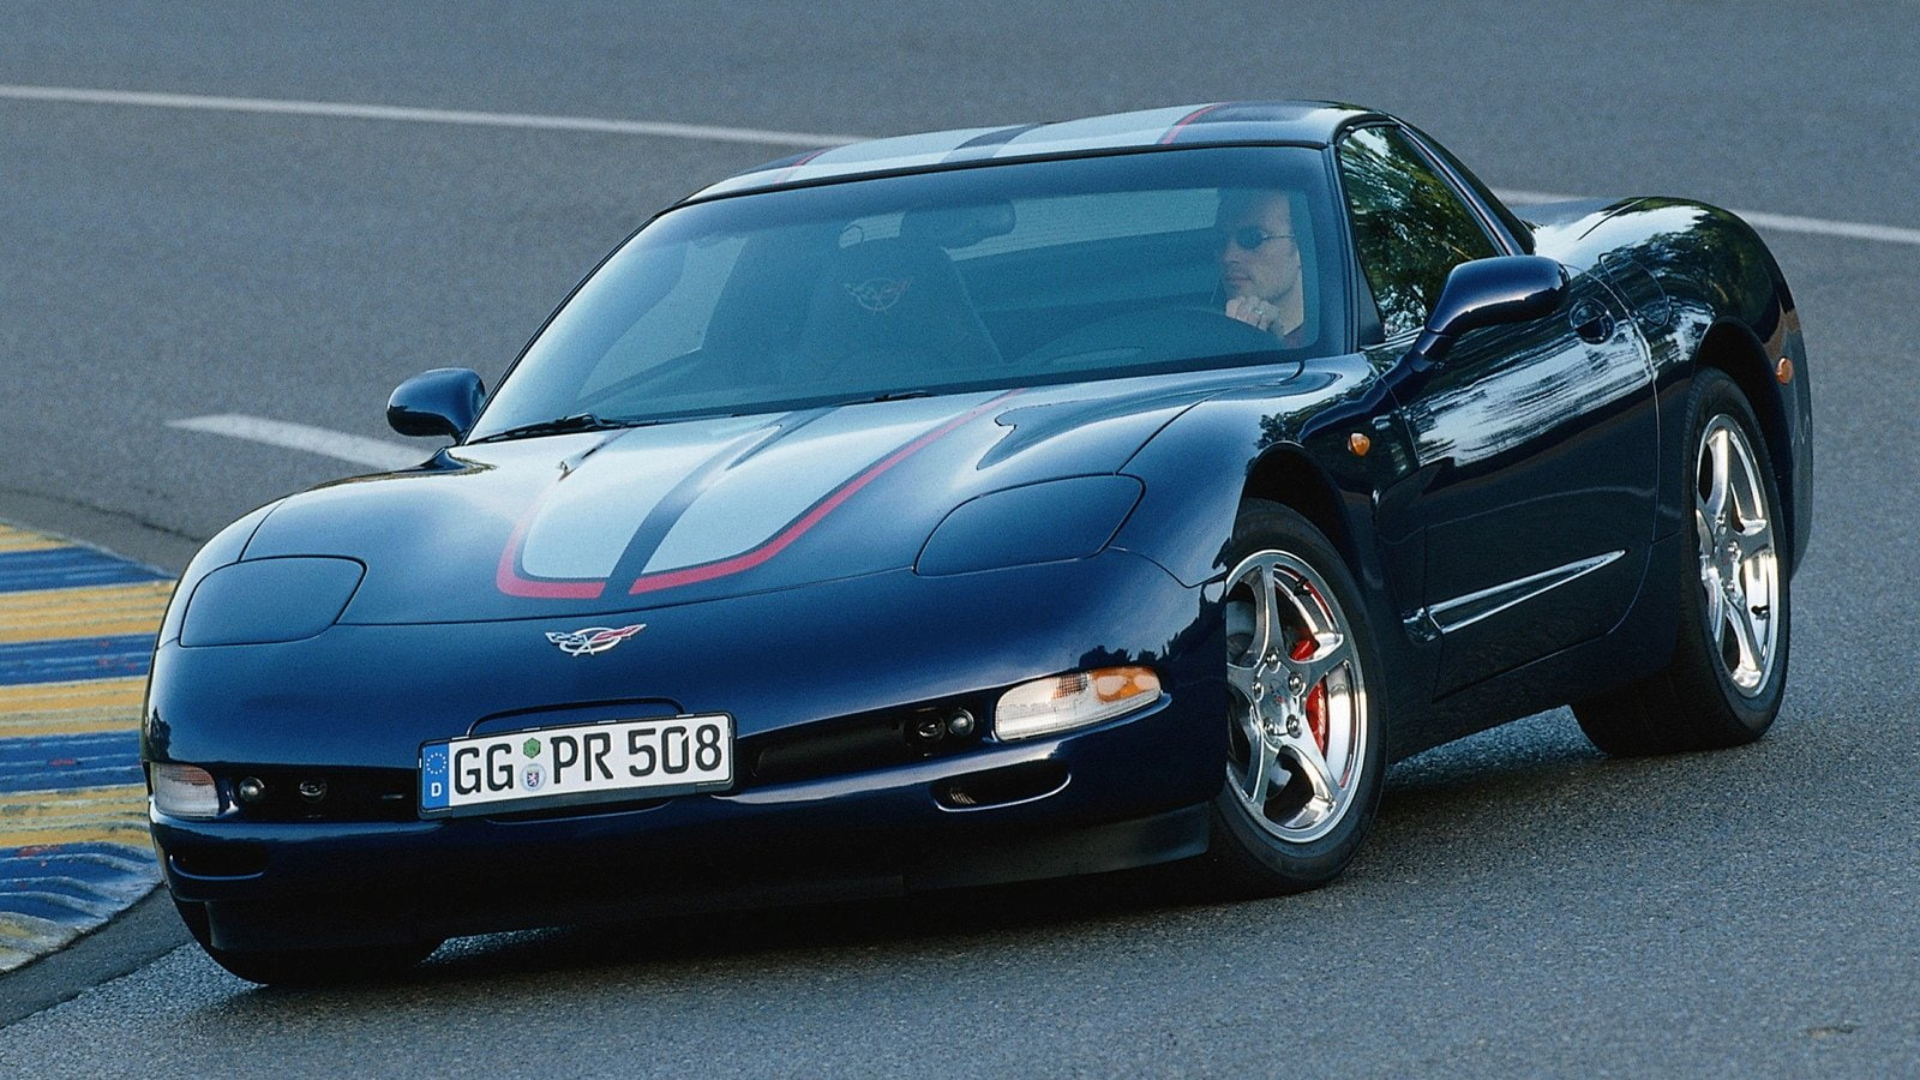 2004 Corvette Wallpapers